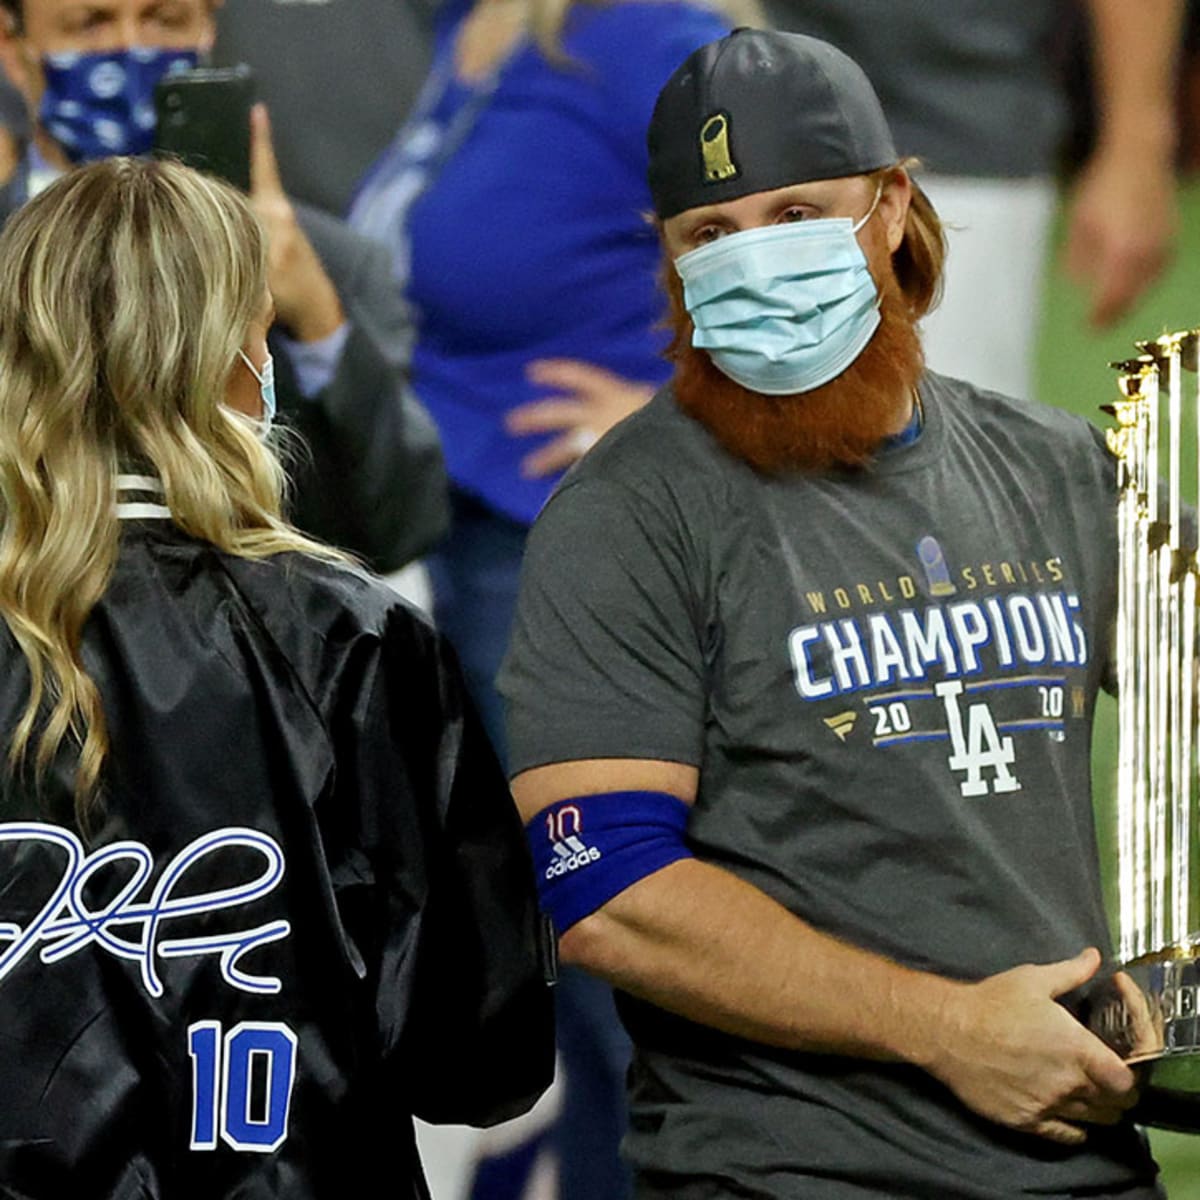 Dodgers' Justin Turner Slammed at World Series 2020 Over Coronavirus